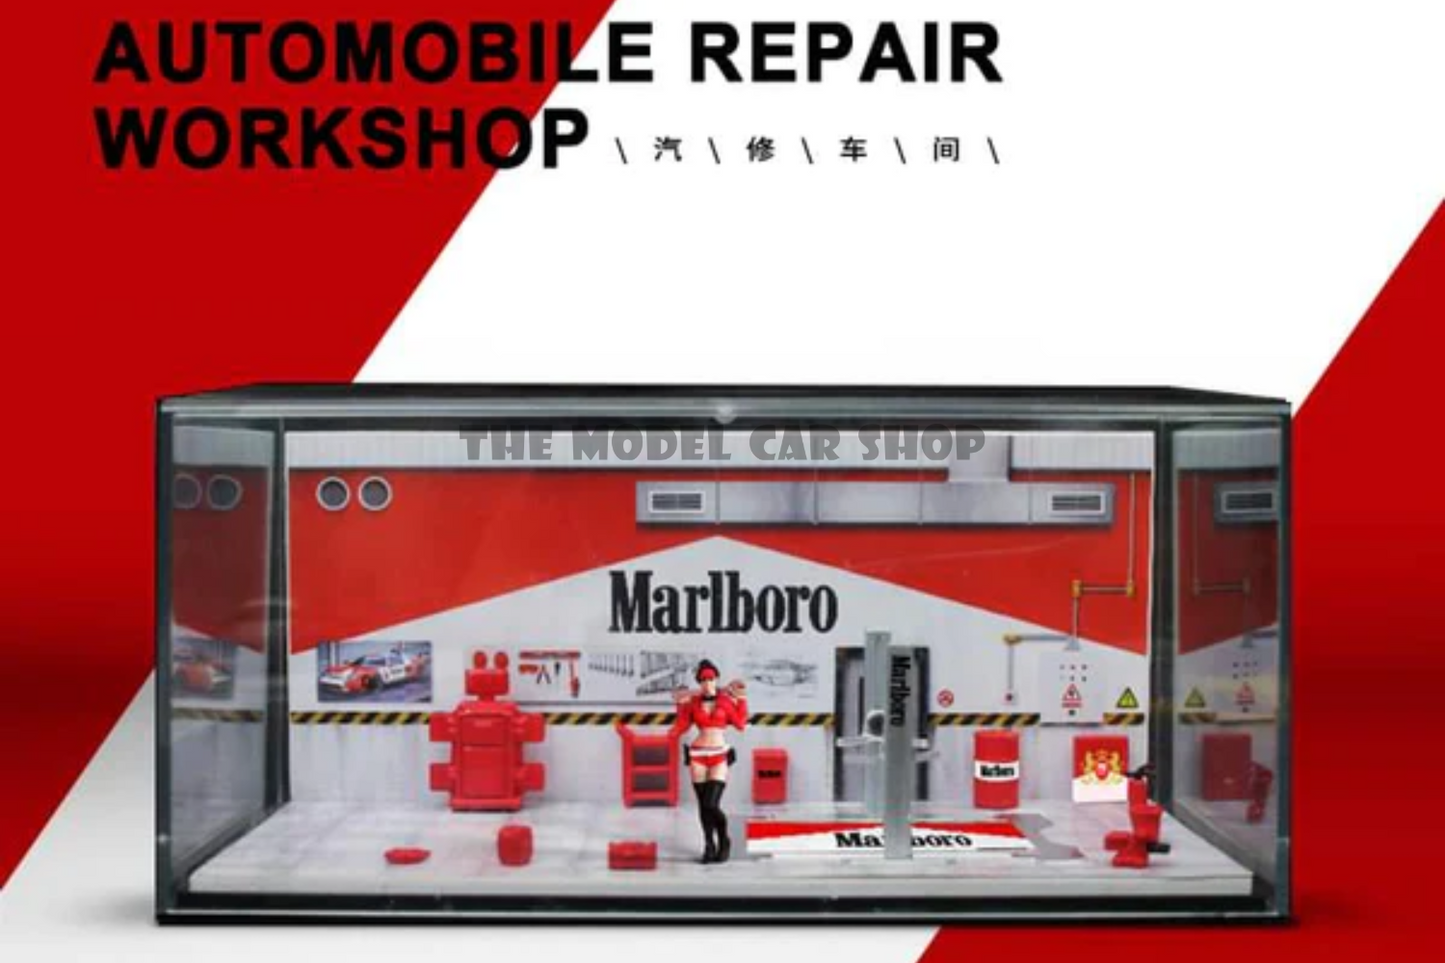 [More Art] Automobile Repair Workshop Diorama